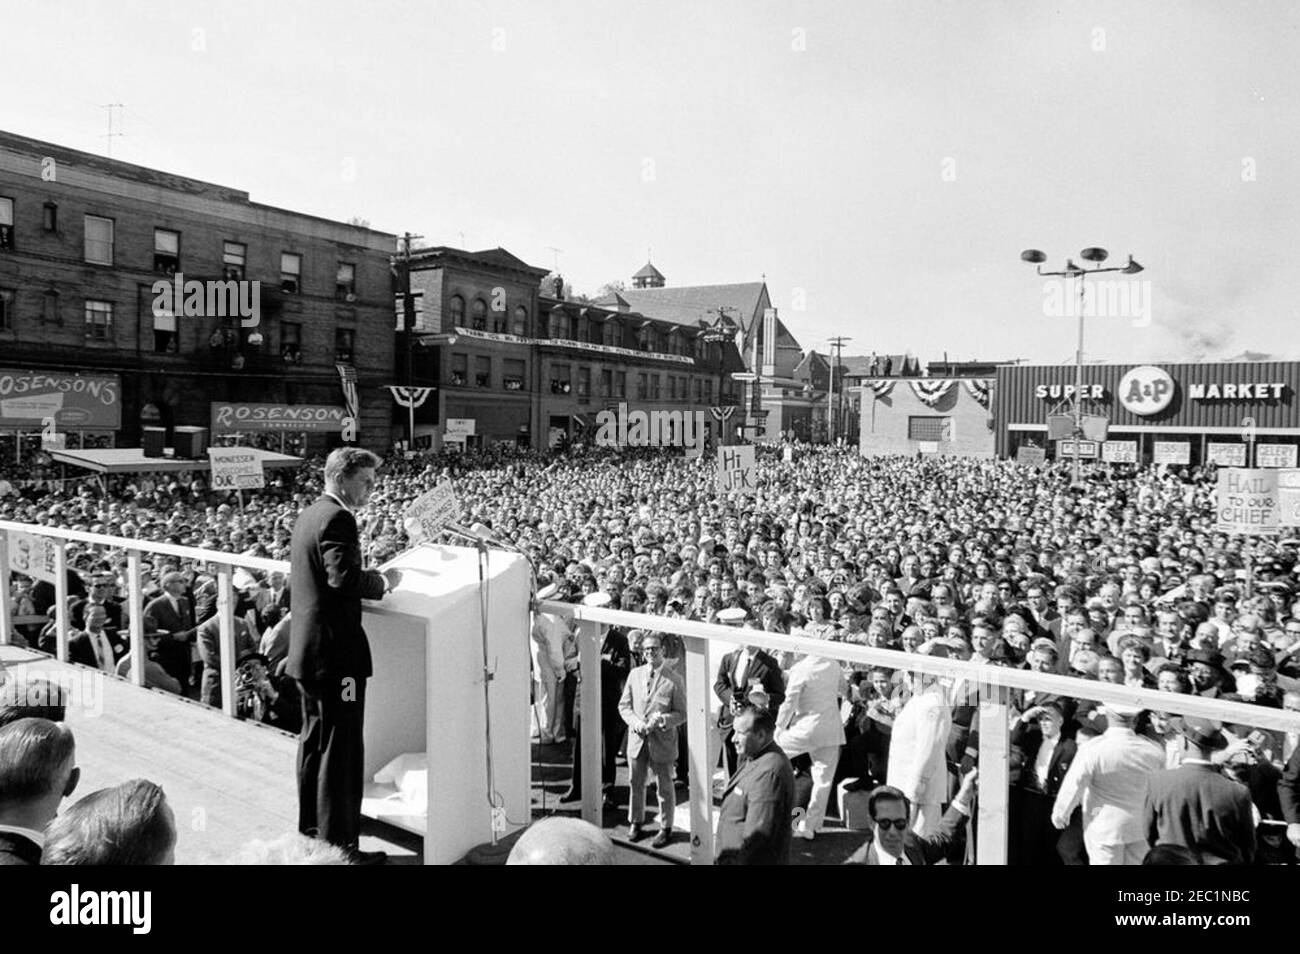 Voyage de campagne du Congrès : Monessen, Pennsylvanie, rallye. Le président John F. Kennedy prononce un discours à l’occasion d’un rassemblement de campagne du Congrès à Monessen, en Pennsylvanie. Banque D'Images